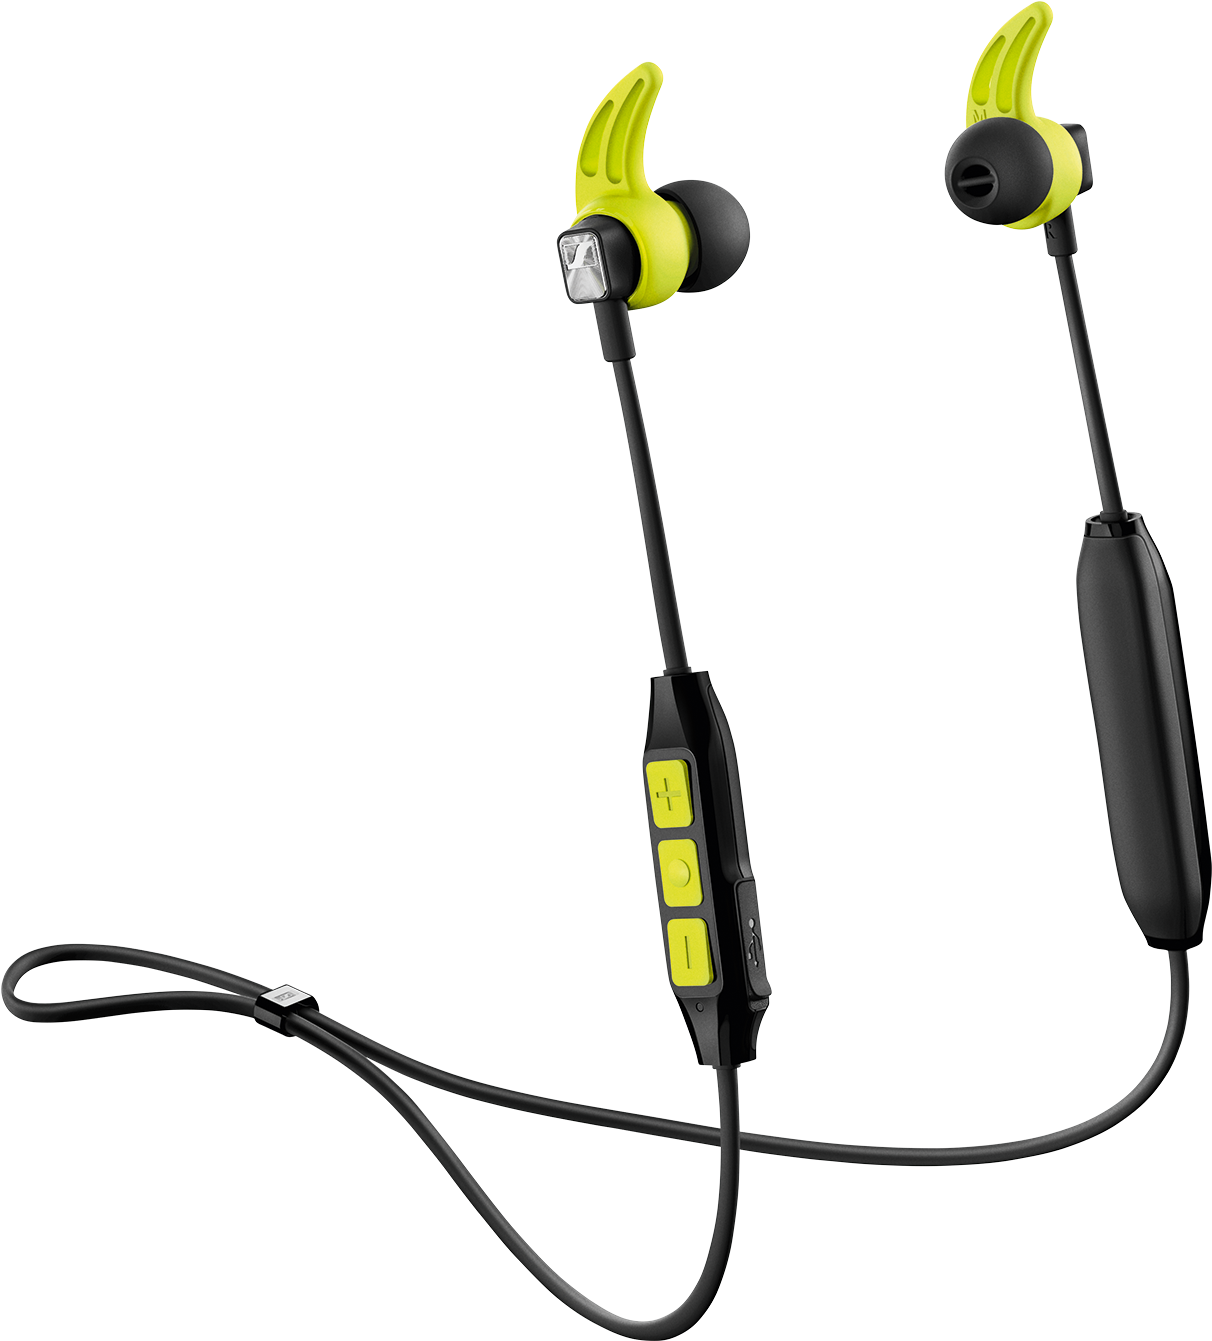 Sennheiser Cx Sport Wireless In-ear Headphones, Black - Sennheiser Cx Sport Wireless Clipart (1500x1500), Png Download